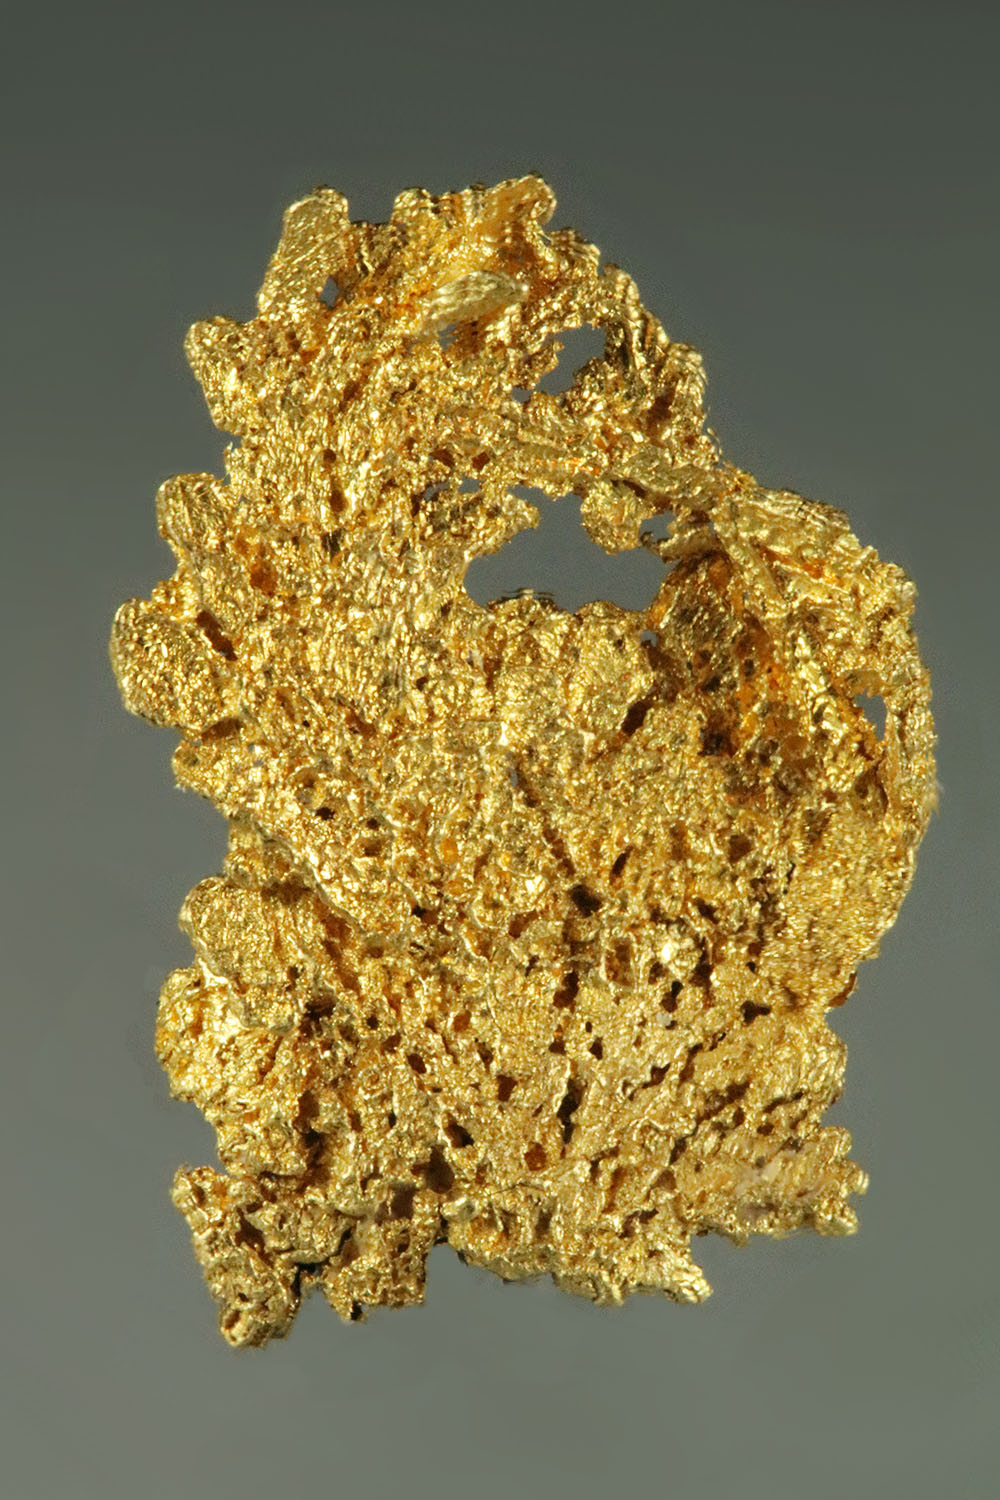 (image for) Brilliant Crystalline Gold Specimen - Arched Form